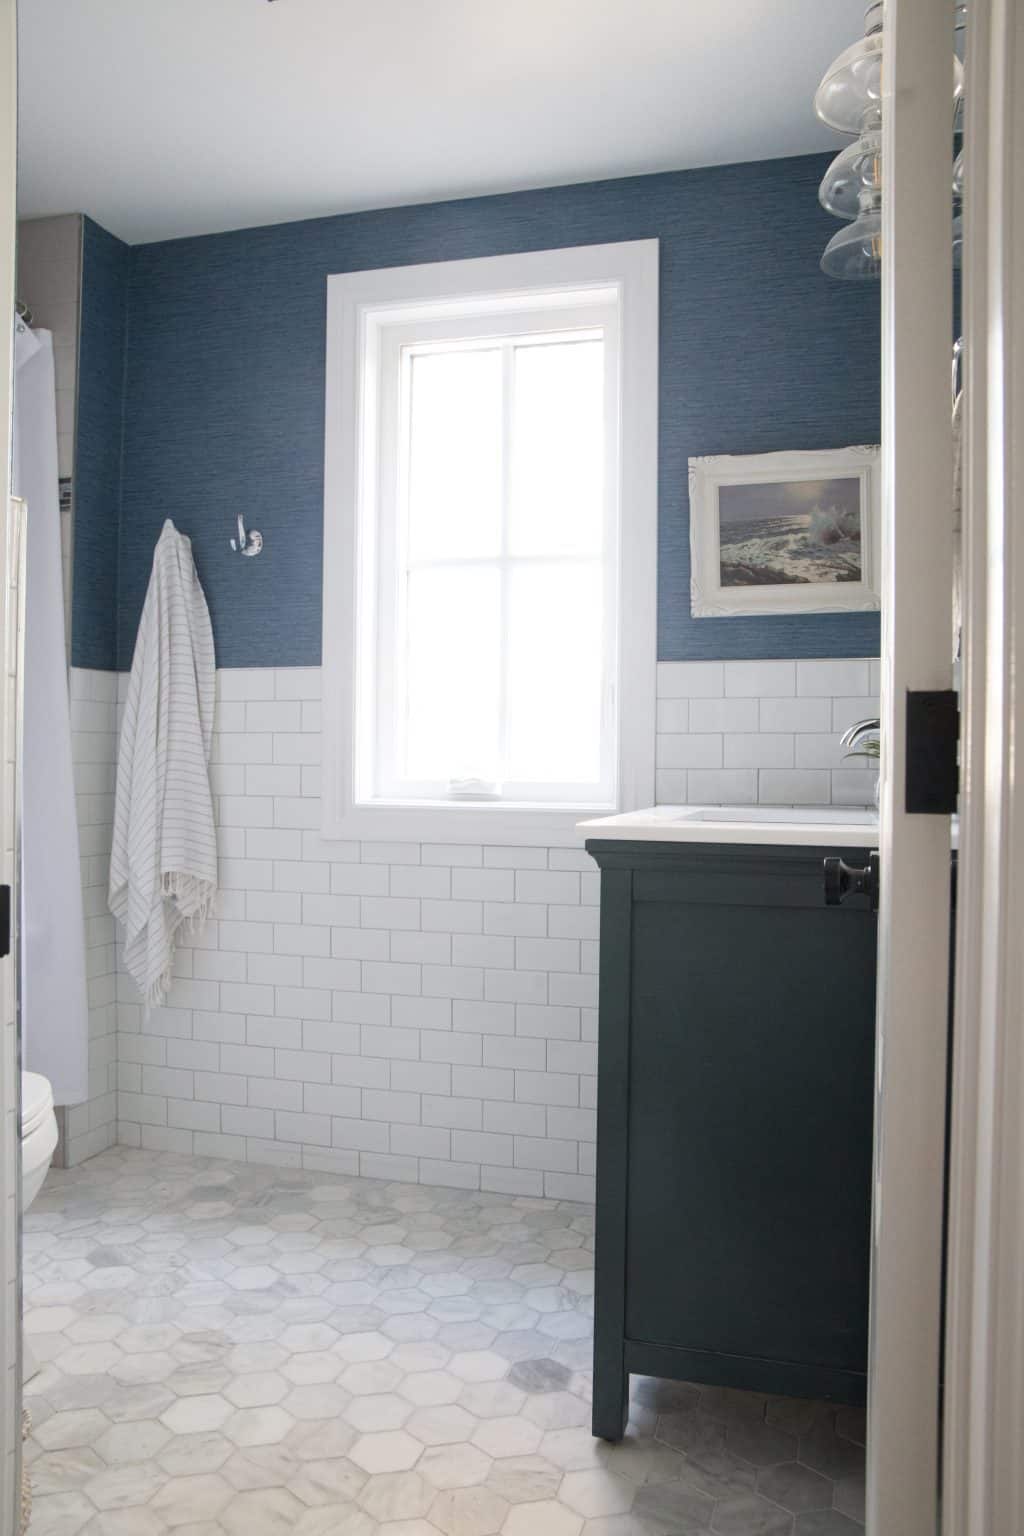 5 Steps to Design a Bathroom Oasis - Home Trends Magazine